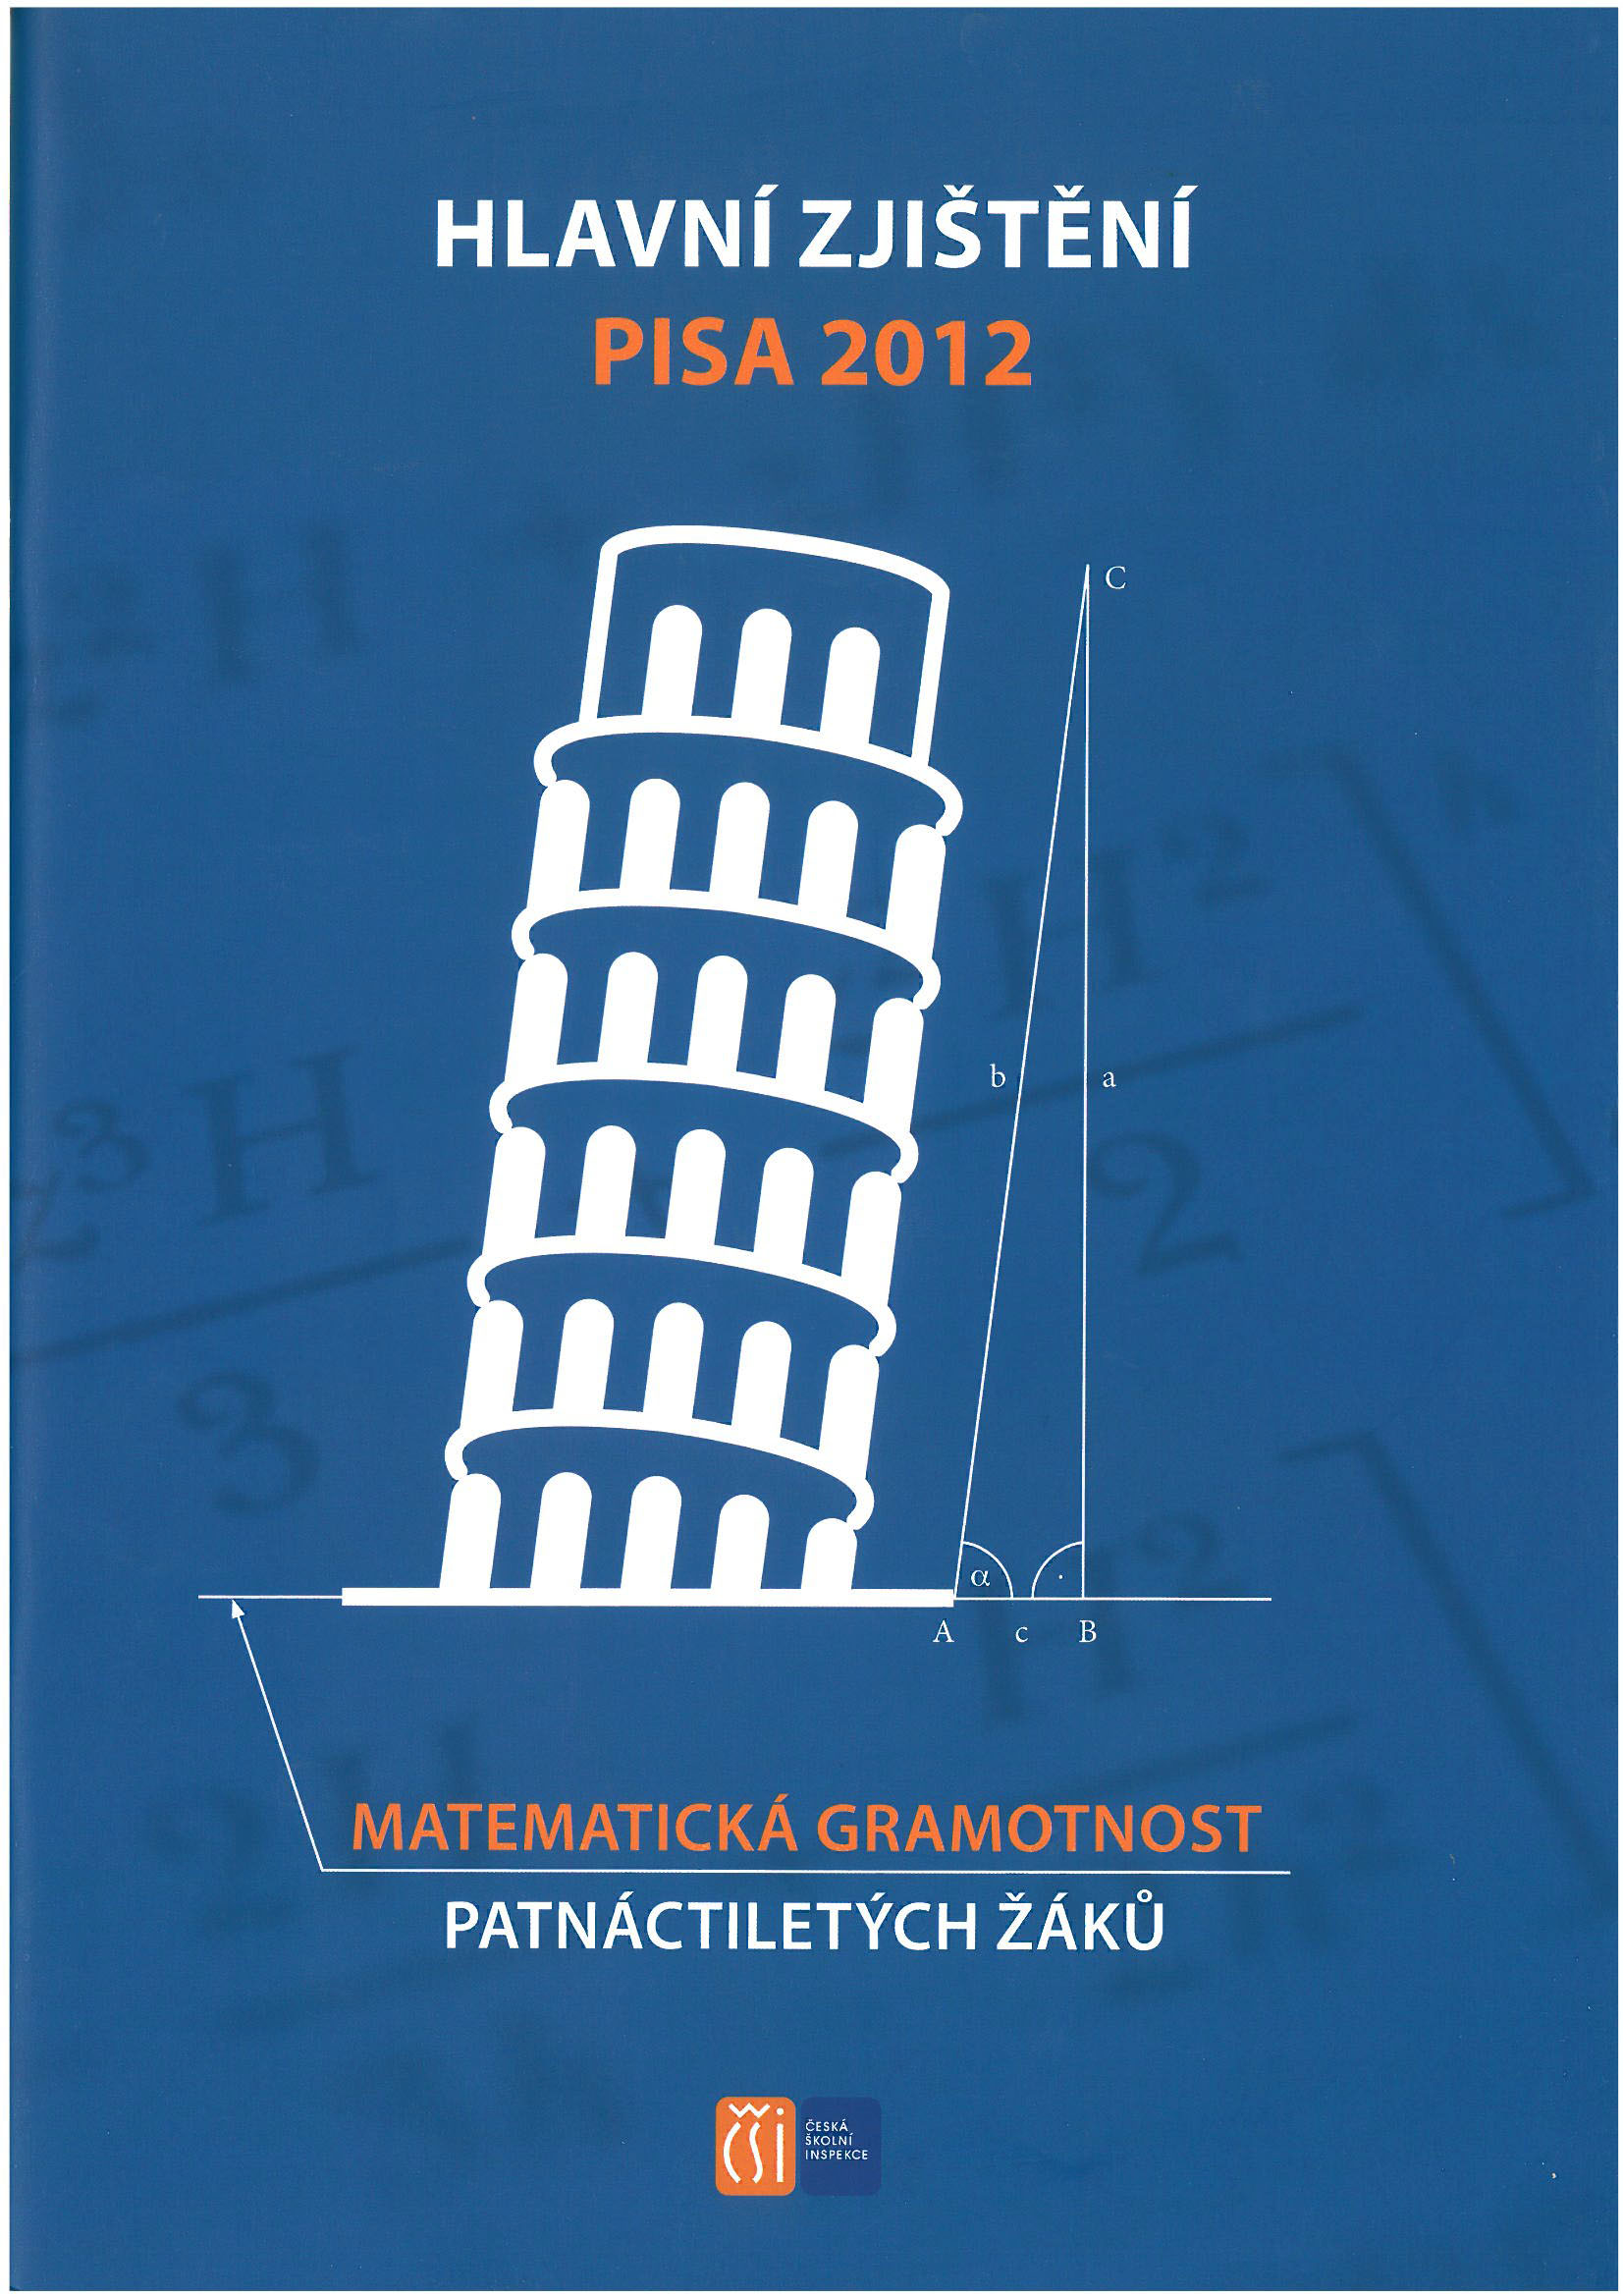 Hlavní zjištění PISA 2012